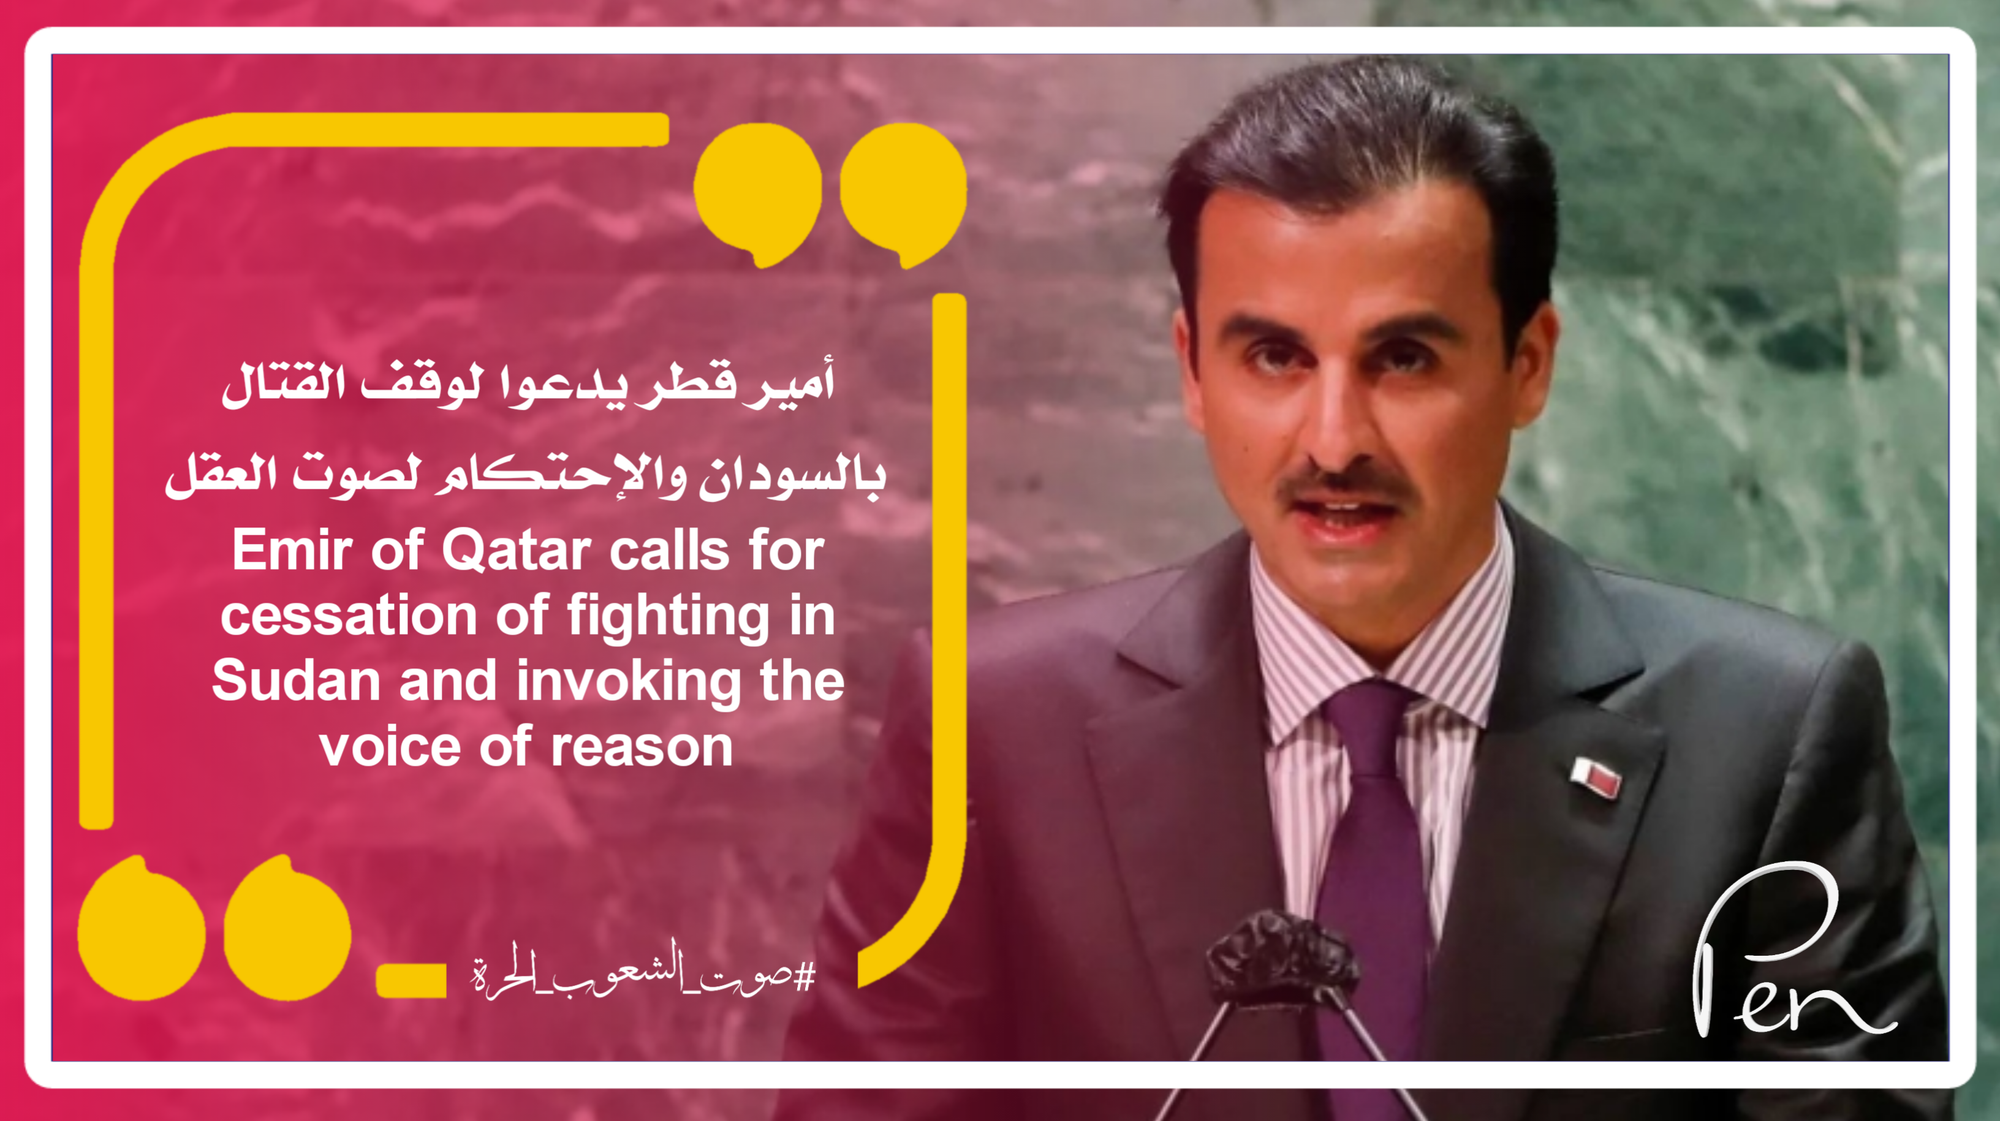 أمير قطر يدعوا لوقف القتال بالسودان والإحتكام لصوت العقل